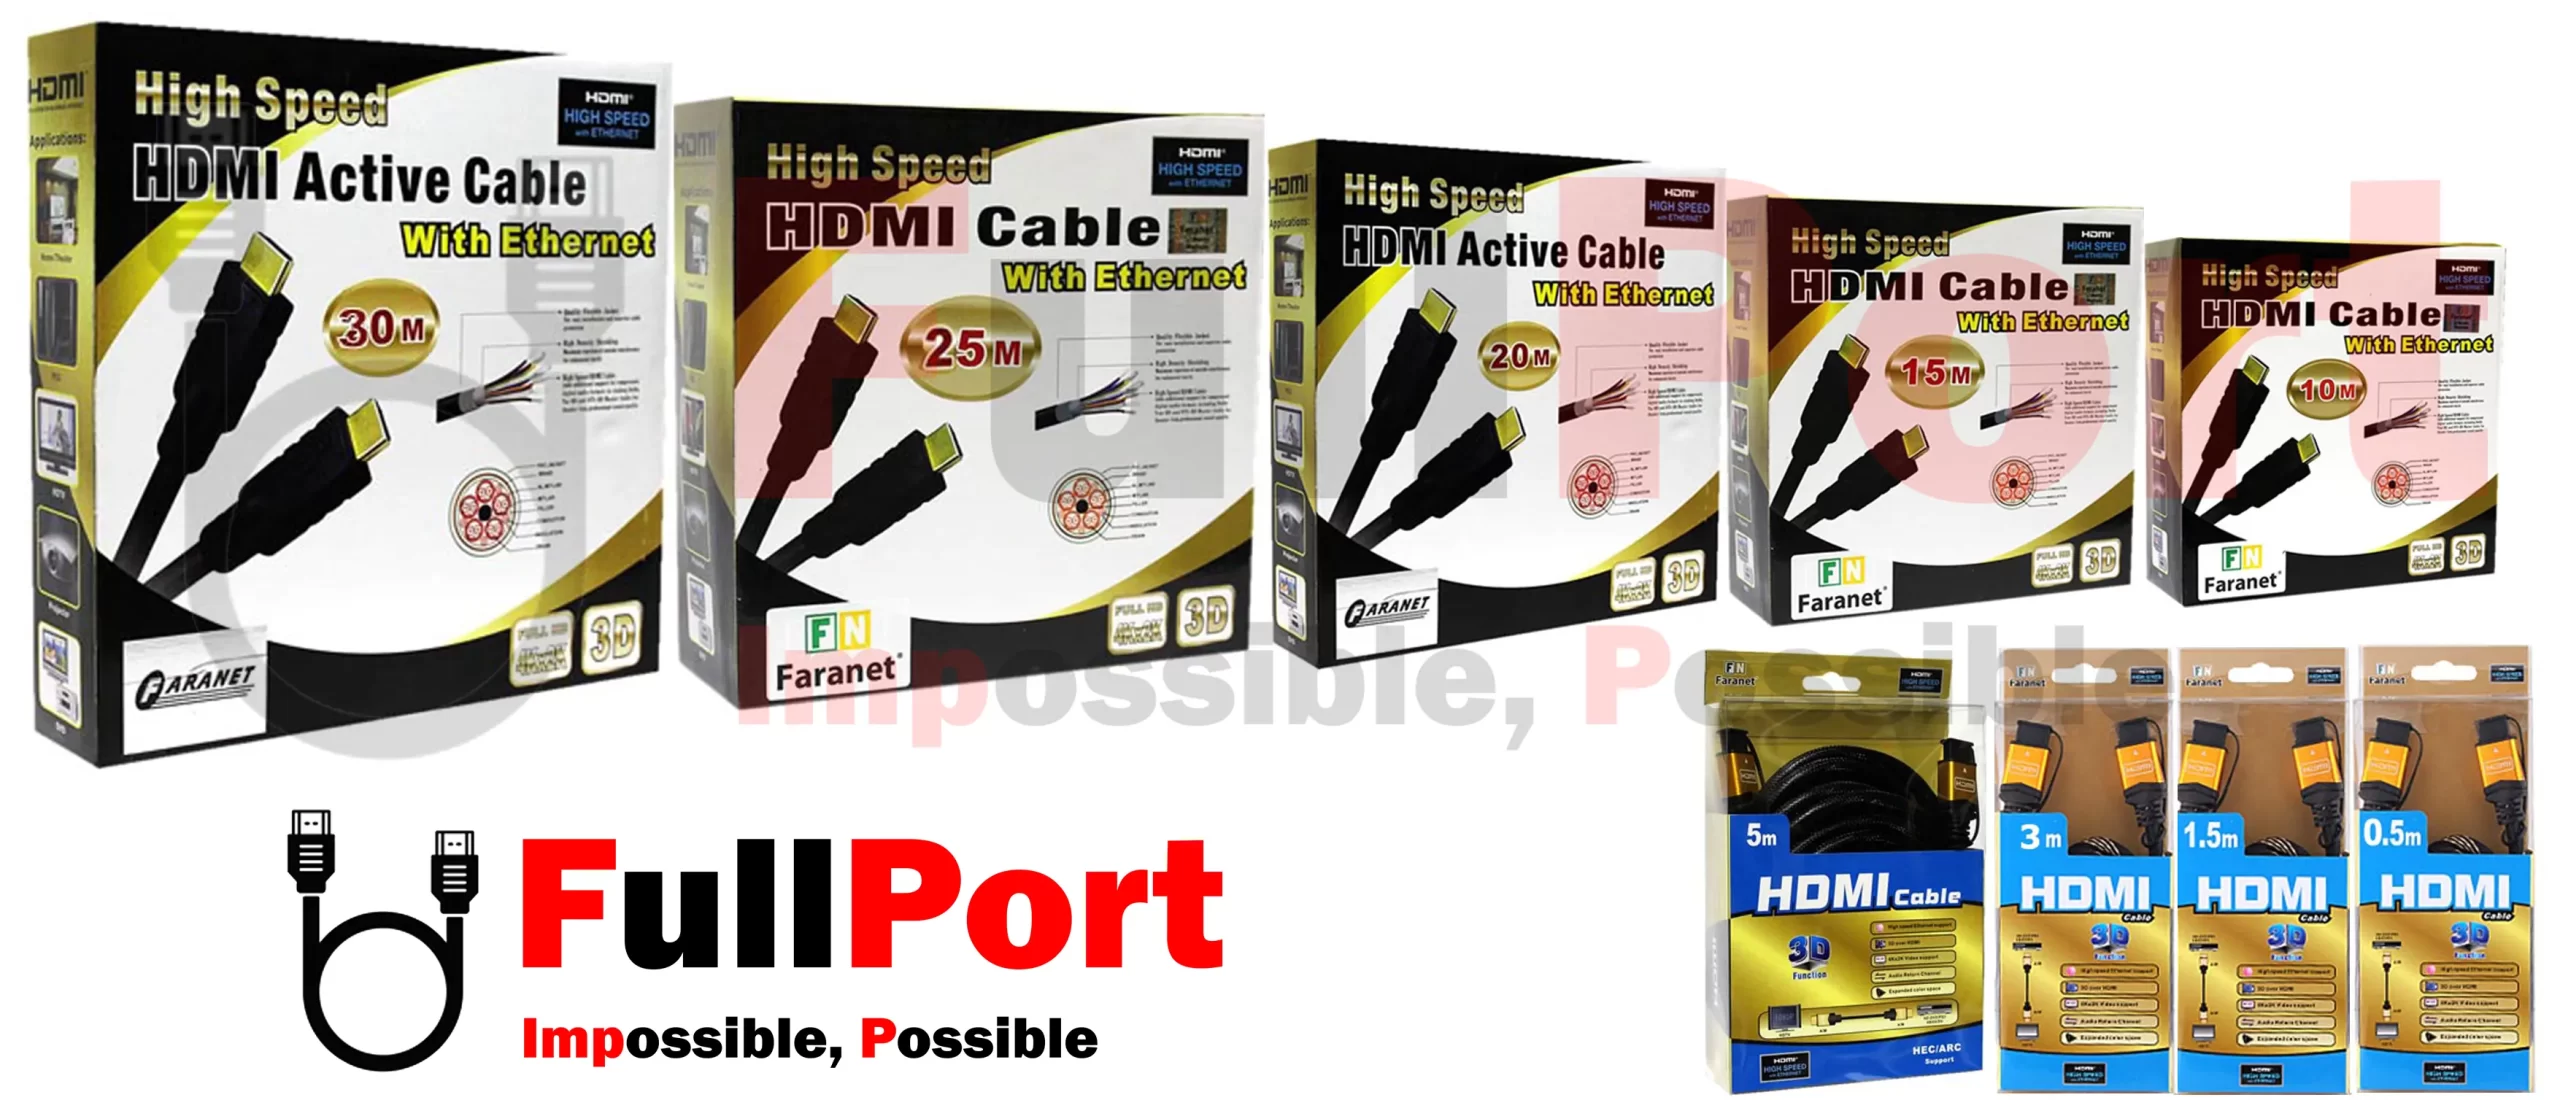 خرید اینترنتی کابل HDMI فرانت | FARANET با گارانتی فرانت 1 سال از فروشگاه اینترنتی فول پورت